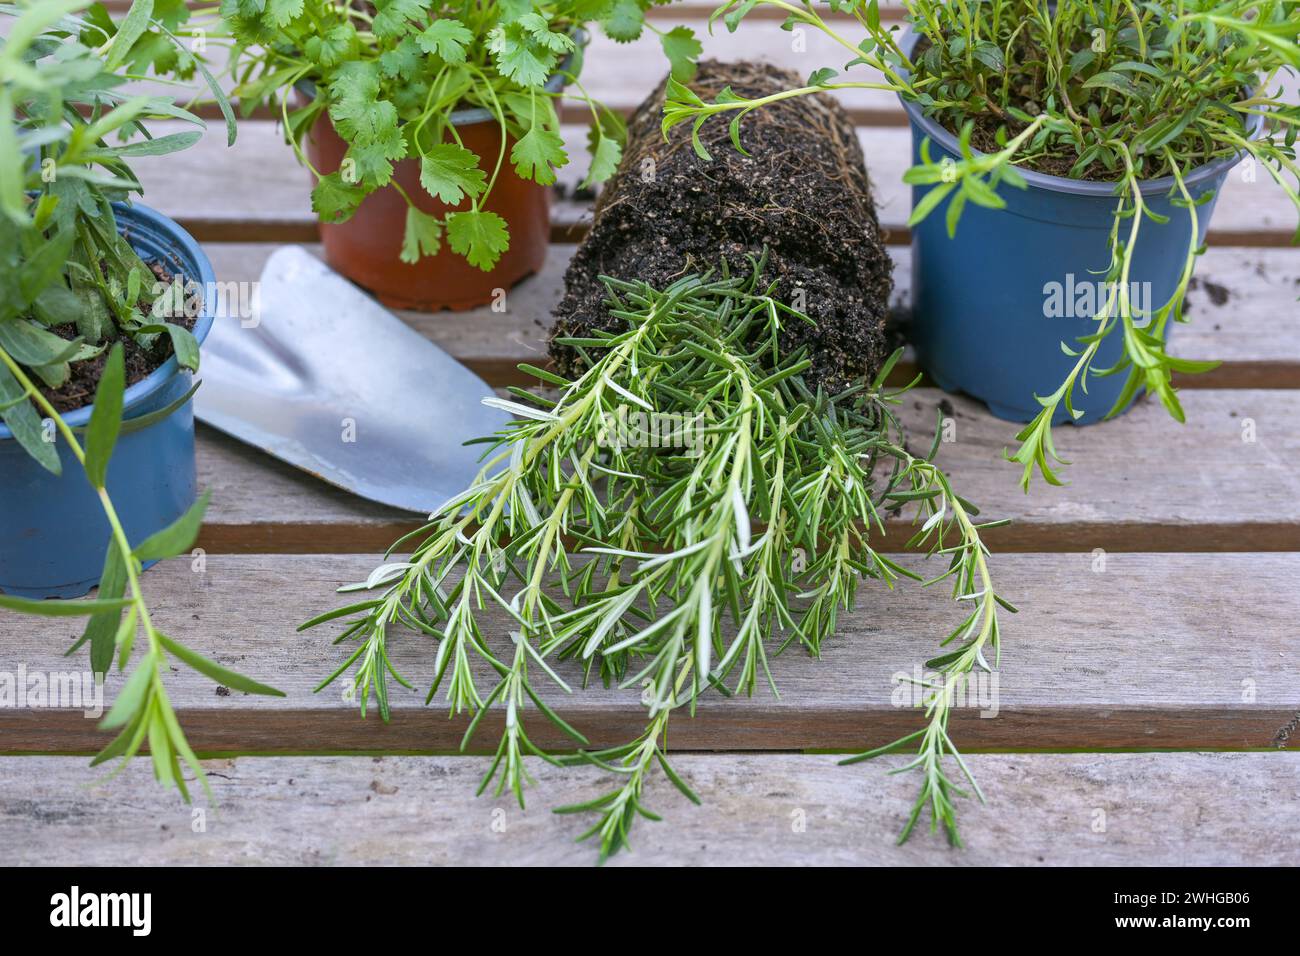 Romarin, autres herbes et une pelle sur une table extérieure grise préparée pour la plantation dans le potager ou sur le balcon, au printemps Banque D'Images